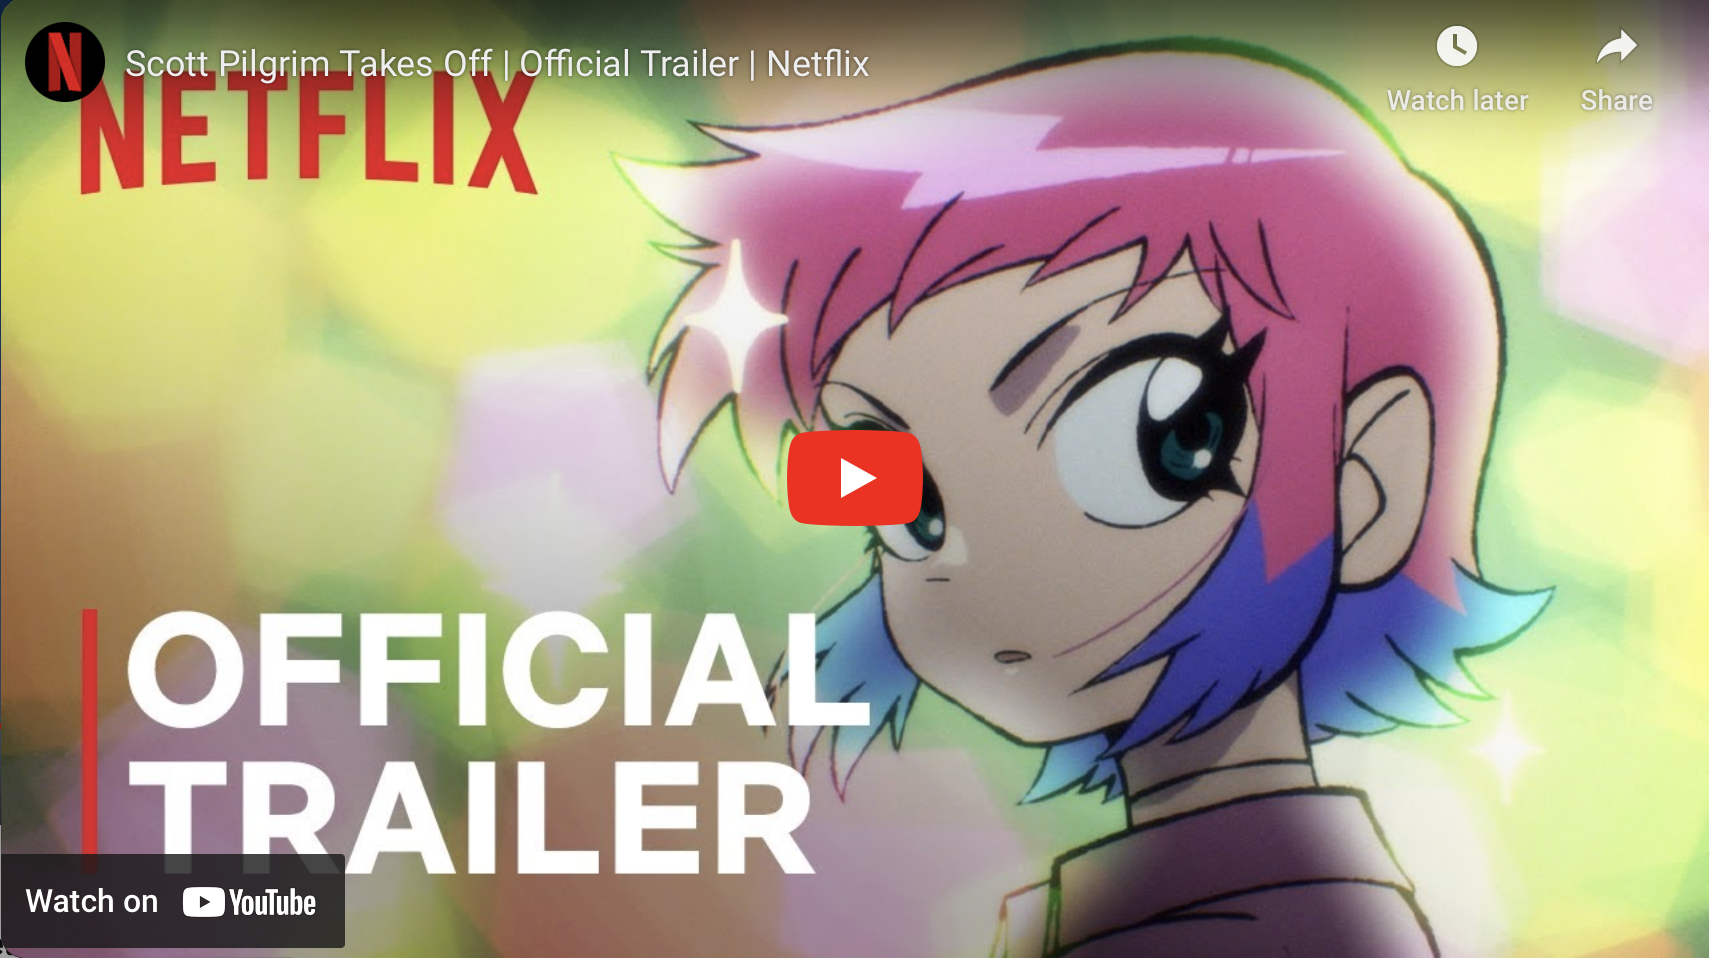 Netflix's Cyberpunk 2077 anime gets its first teaser trailer